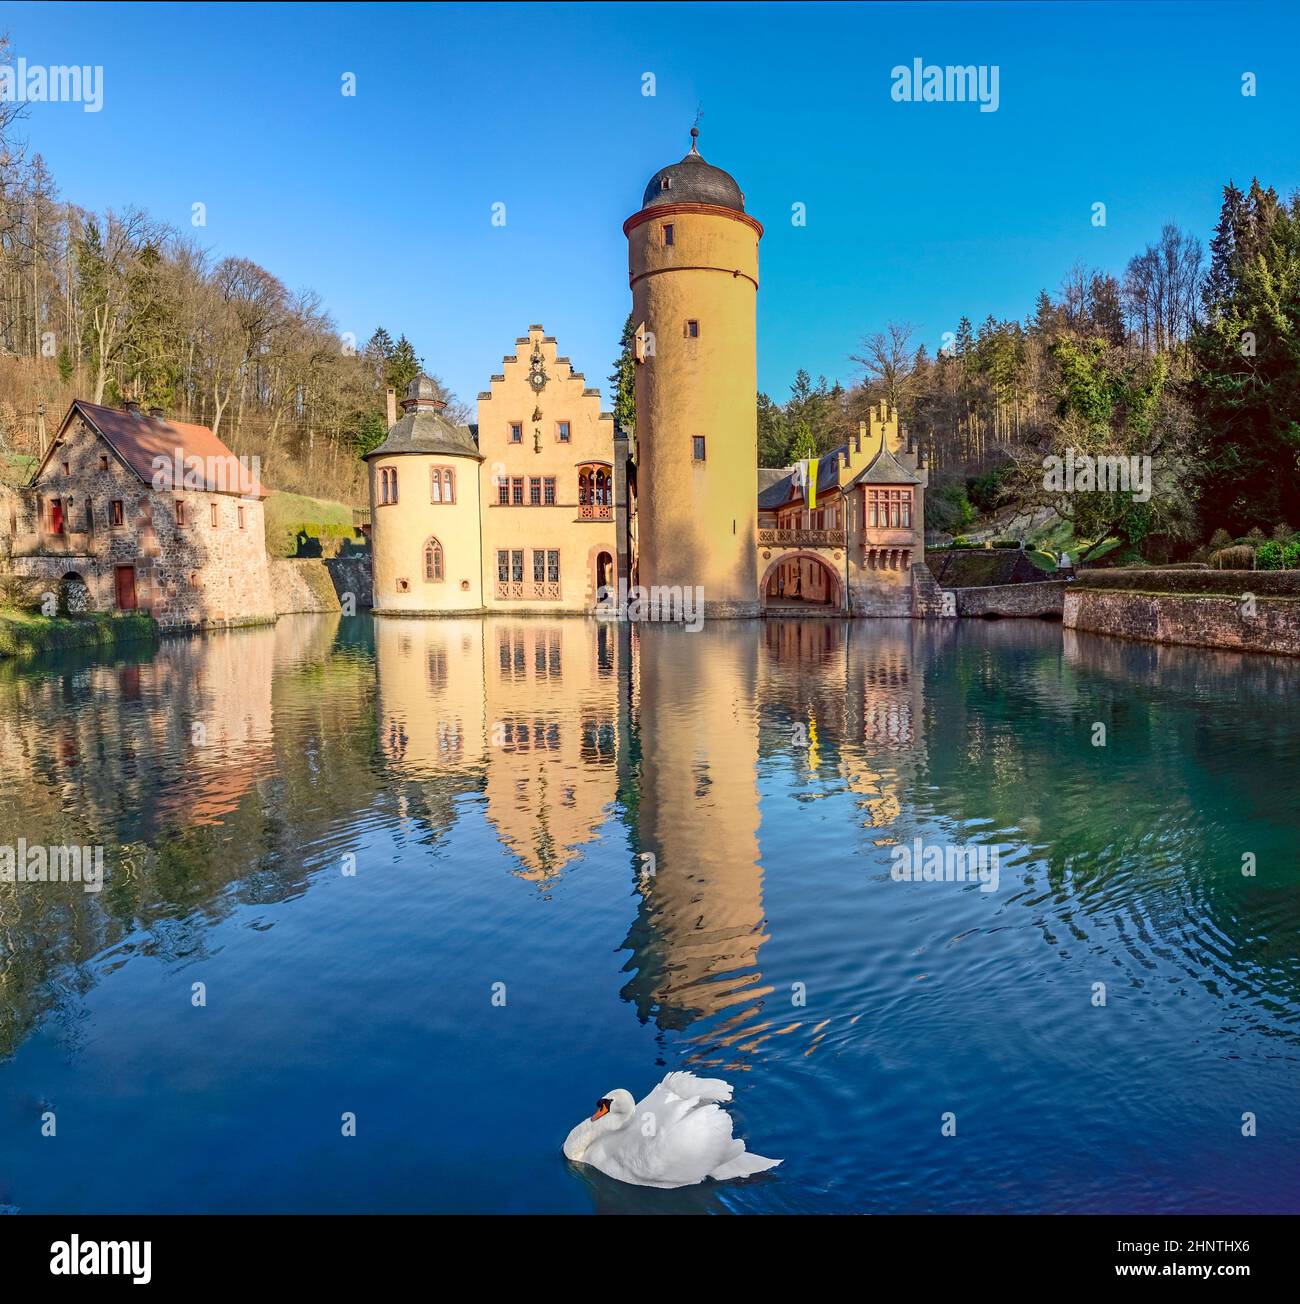 The Mespelbrunn water Castle  in Mespelbrunn, Bavaria, Germany Stock Photo